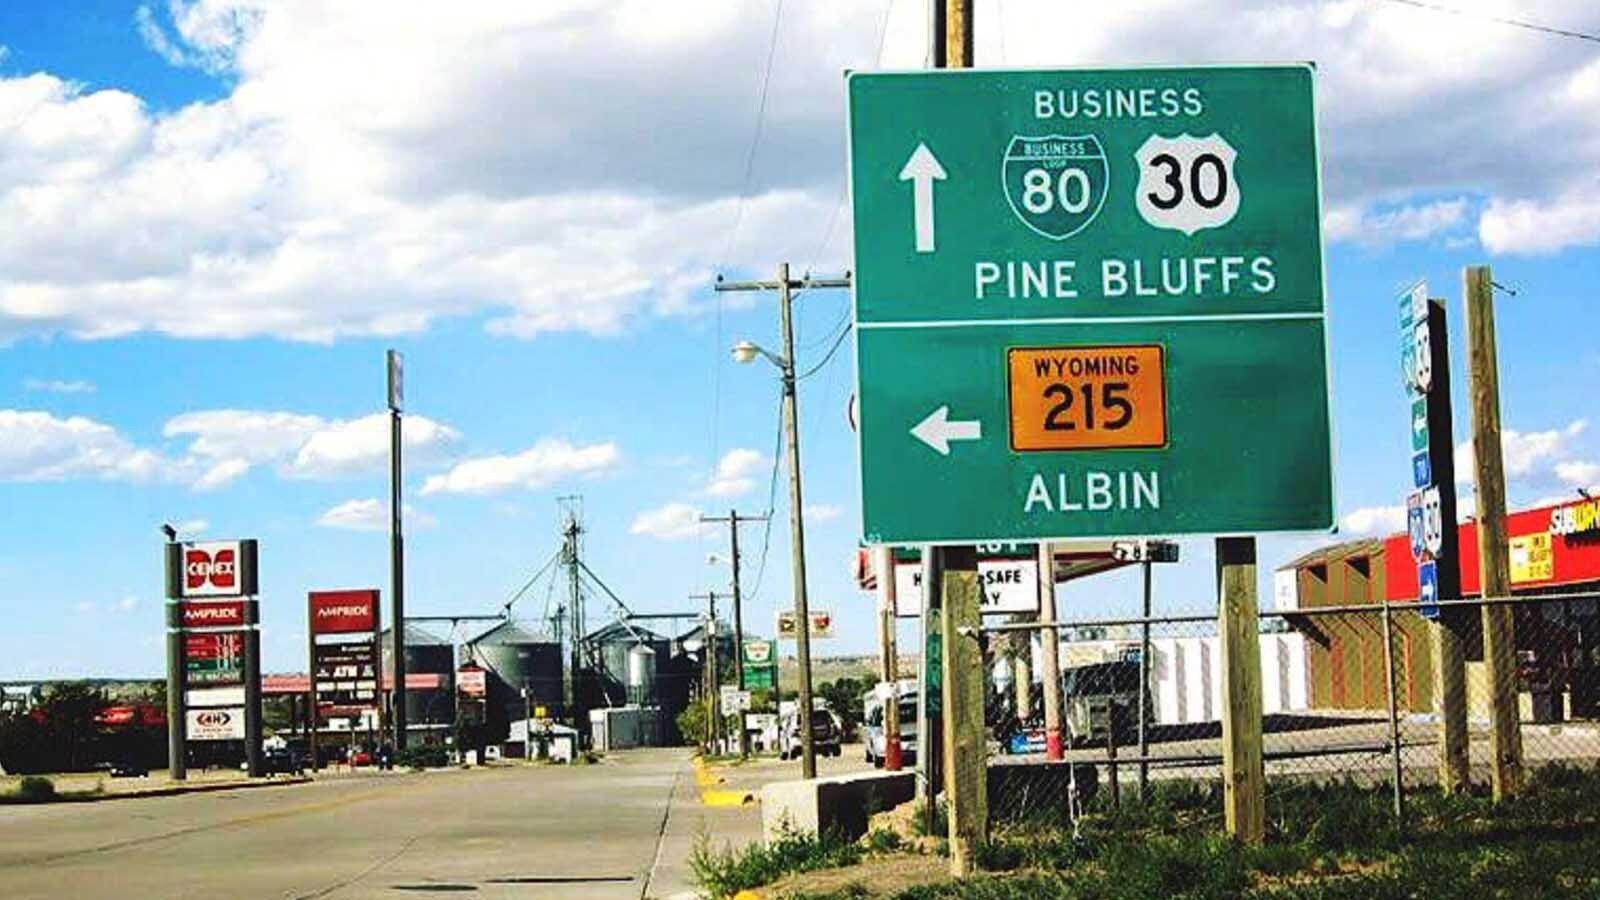 Pine bluffs sign 8 23 23